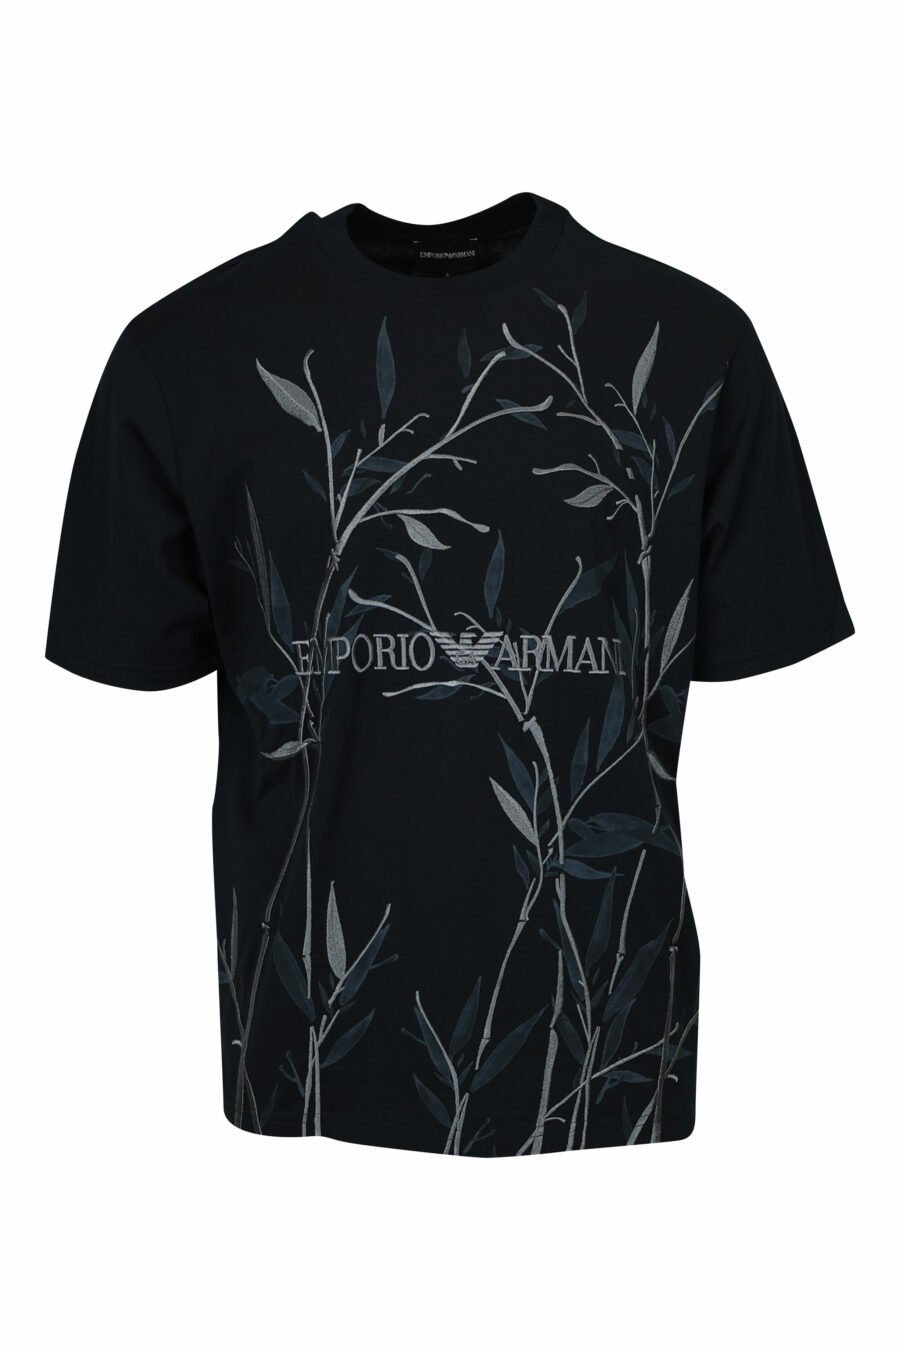 Camiseta negra con estampado hojas y maxilogo "emporio" - 8058947296163